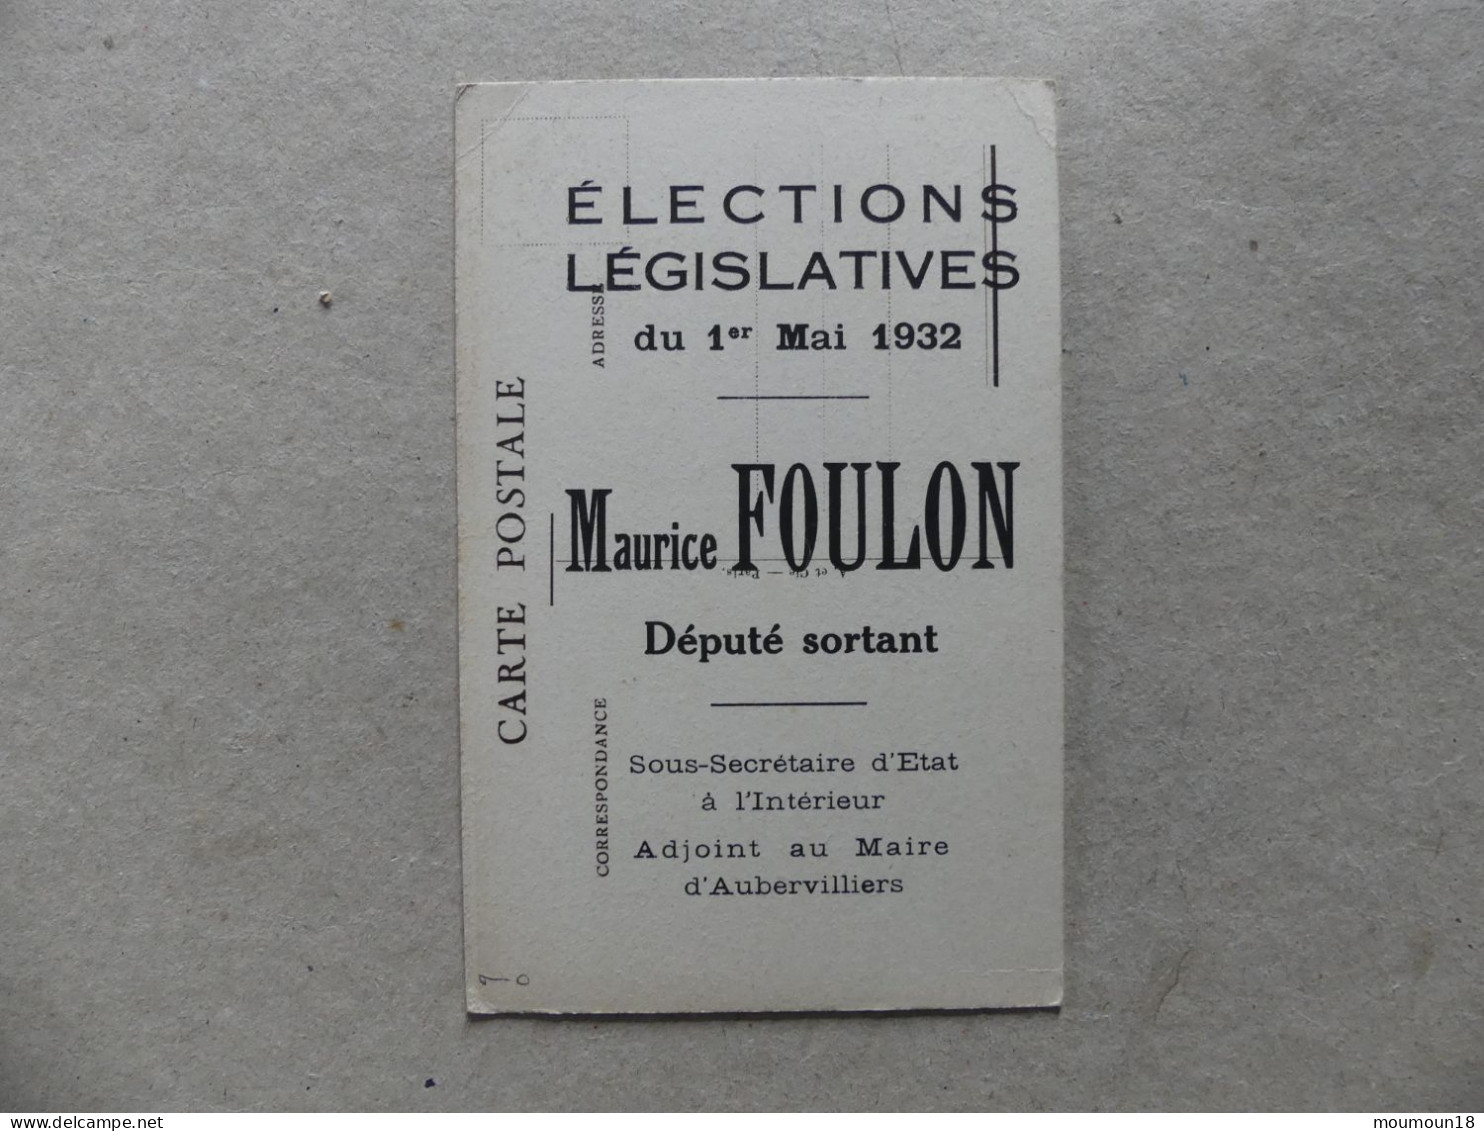 Maurice Foulon Elections Législatives 1932 Député Sortant Sous-Secrétaire D'Etat Intérieur Adjoint Maire Aubervilliers - Politicians & Soldiers